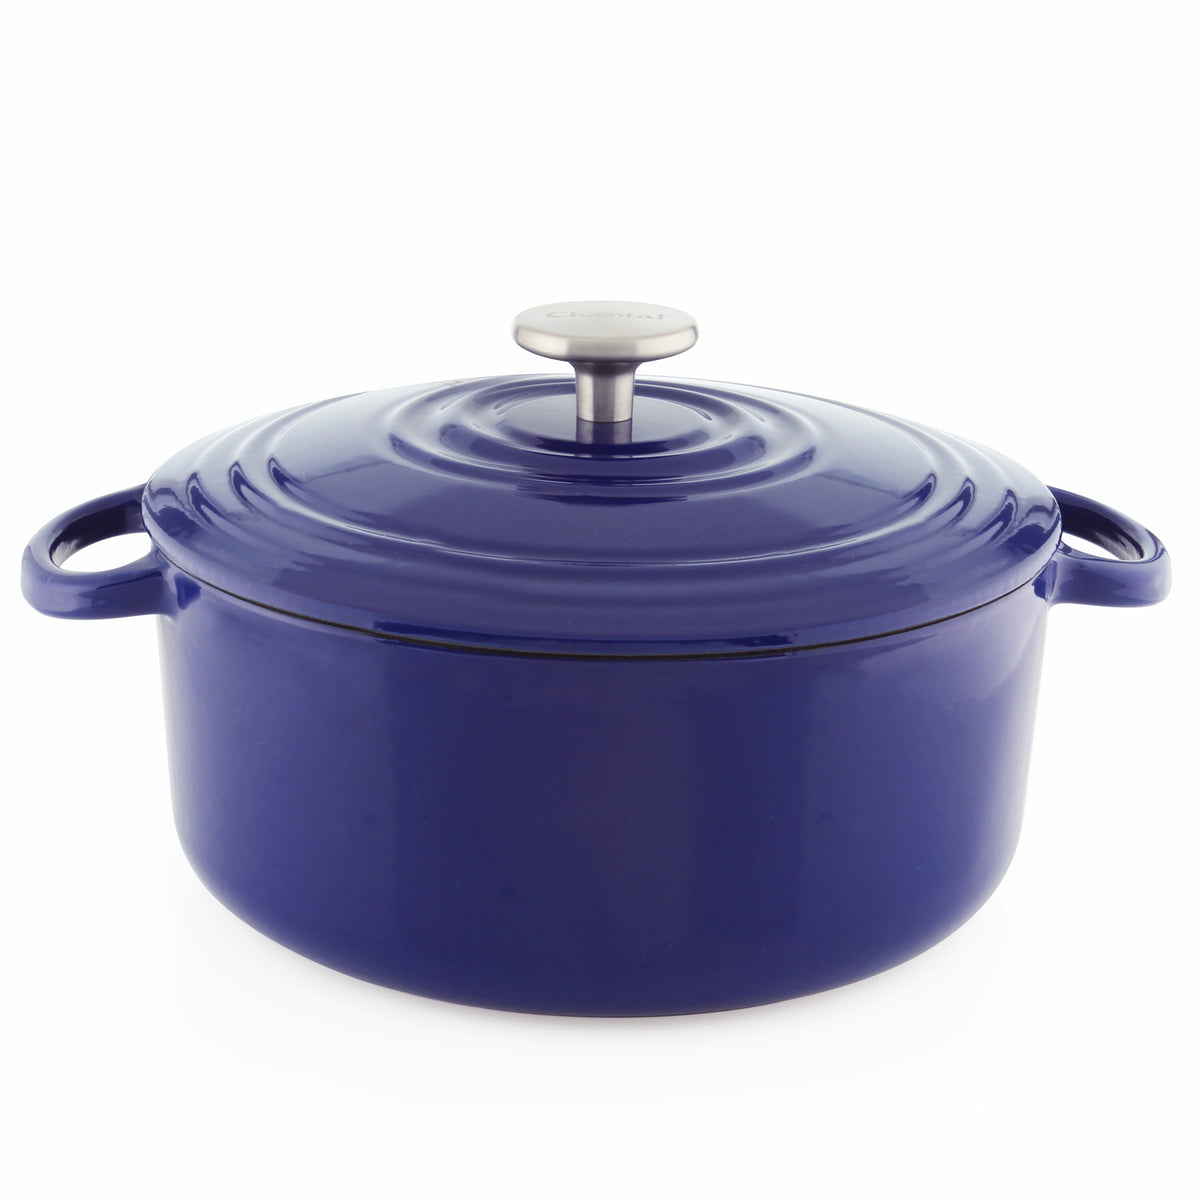 Cast Iron Dutch Oven Pot With Lid, 3-Quart, Purple